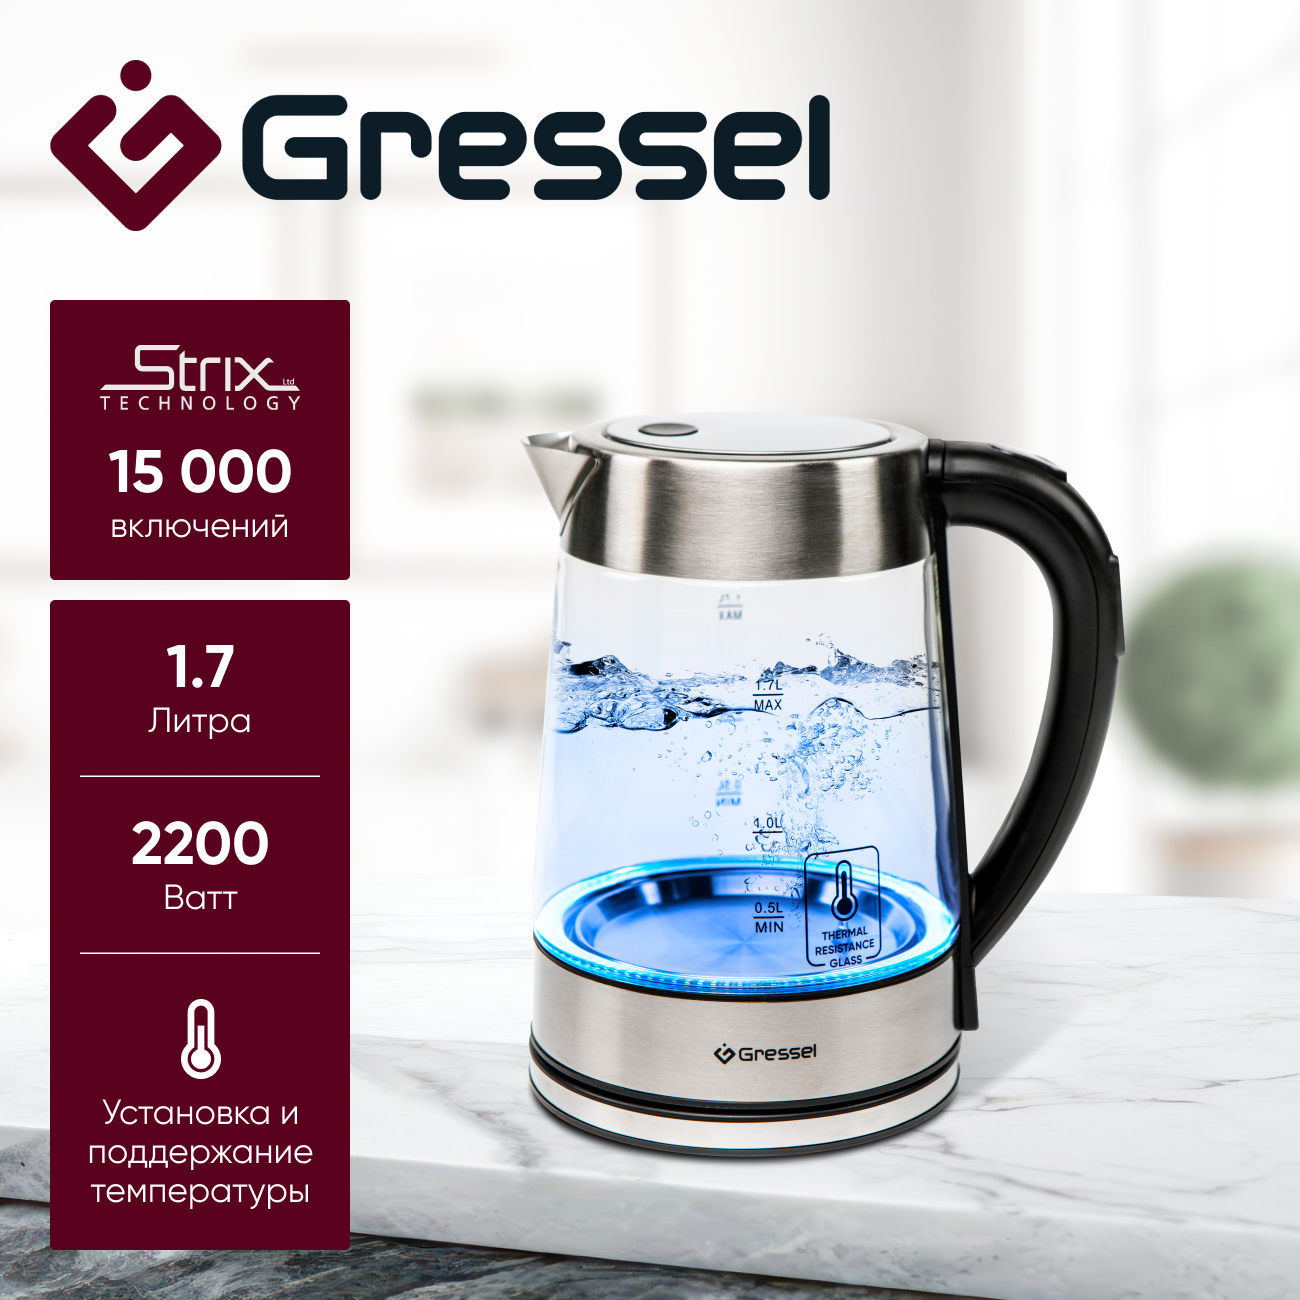 Чайник электрический Gressel GRK-1106 с регулировкой температуры, стеклянный с подсветкой крючок nautilus sting float опарыш s 1106 bn 12 10 шт